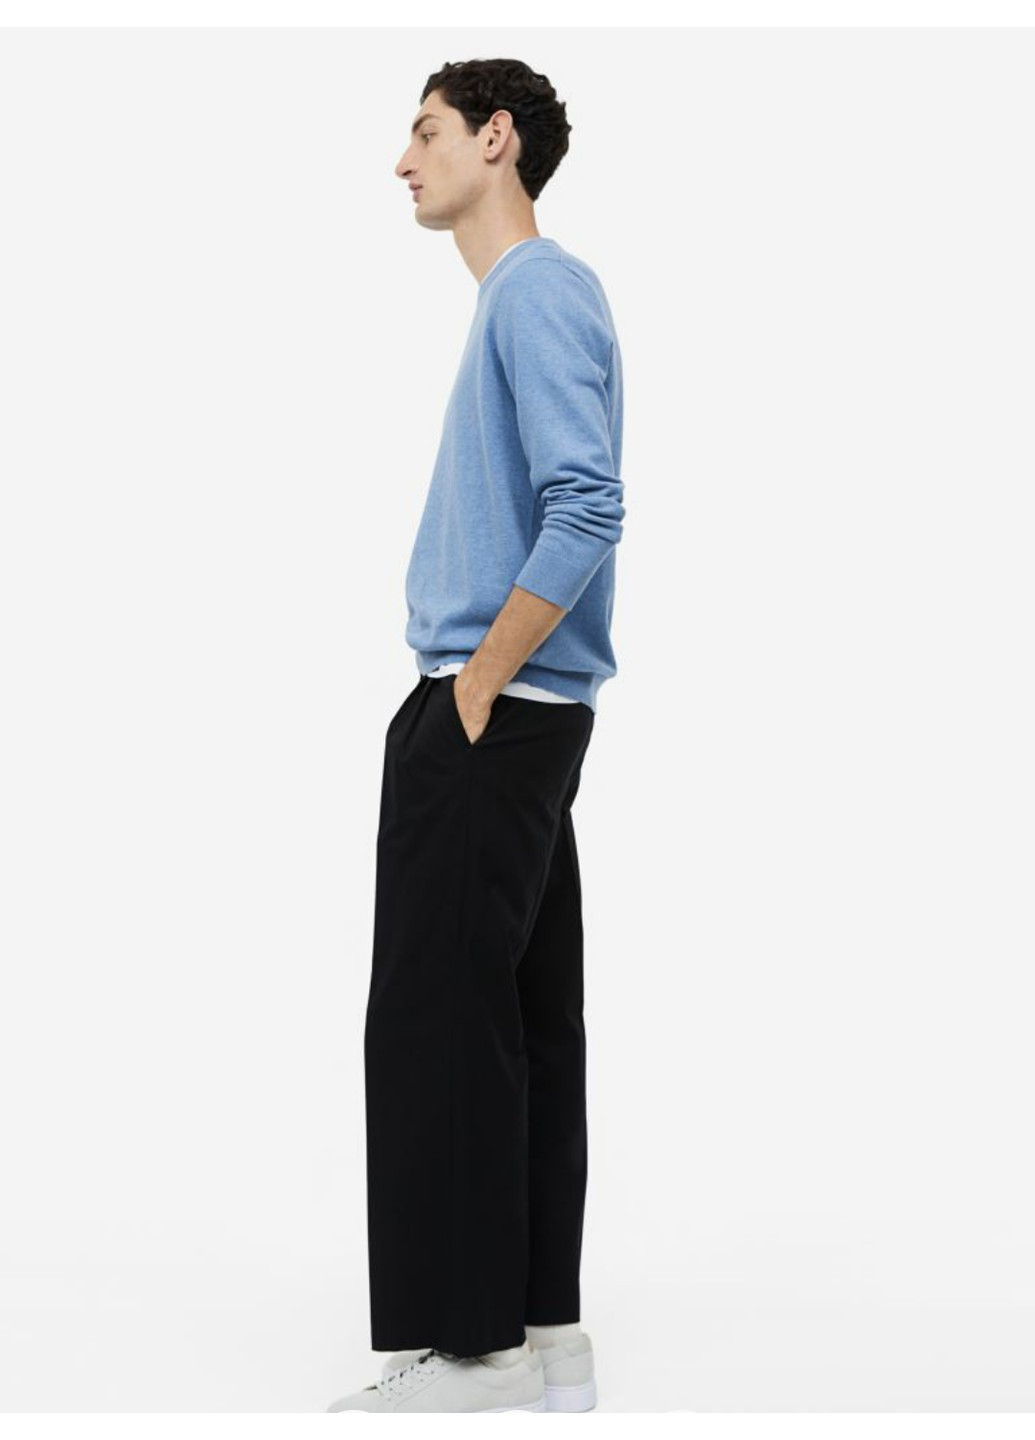 Голубой демисезонный мужской приталенный джемпер slim fit (56179) s голубой H&M